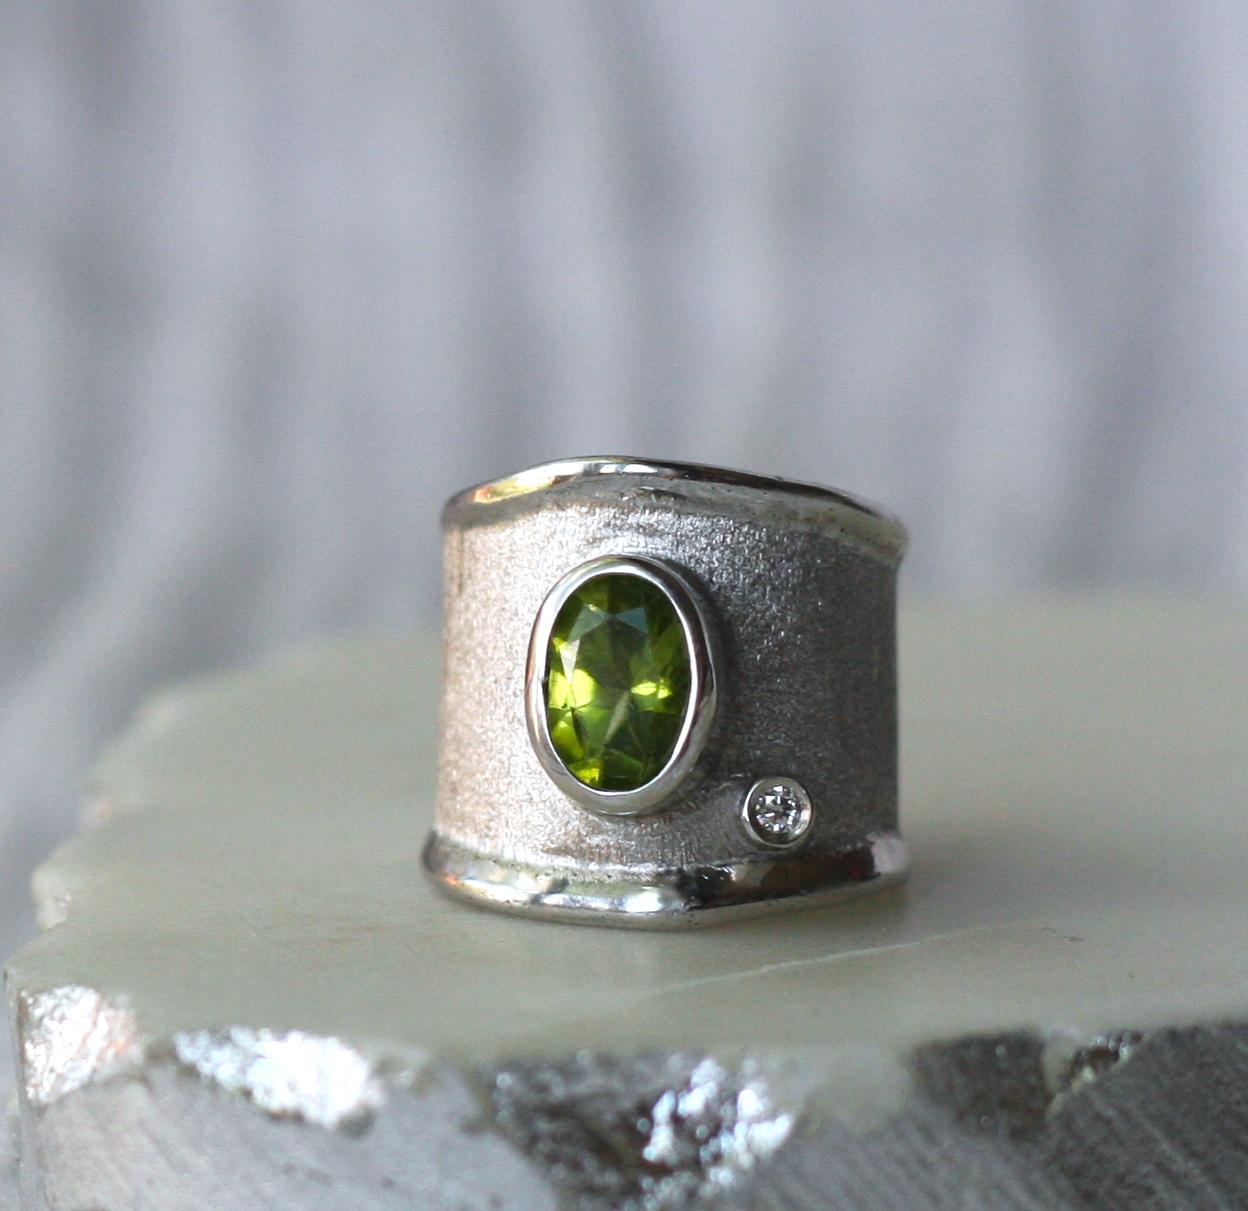 Yianni Creations präsentiert einen handgefertigten Ring aus der Ammos-Kollektion, der aus reinem 950er Silber gefertigt und zum Schutz gegen Anlaufen mit Palladium beschichtet ist. Der Ring zeigt 2,00 Karat Peridot und 0,03 Karat Diamanten im